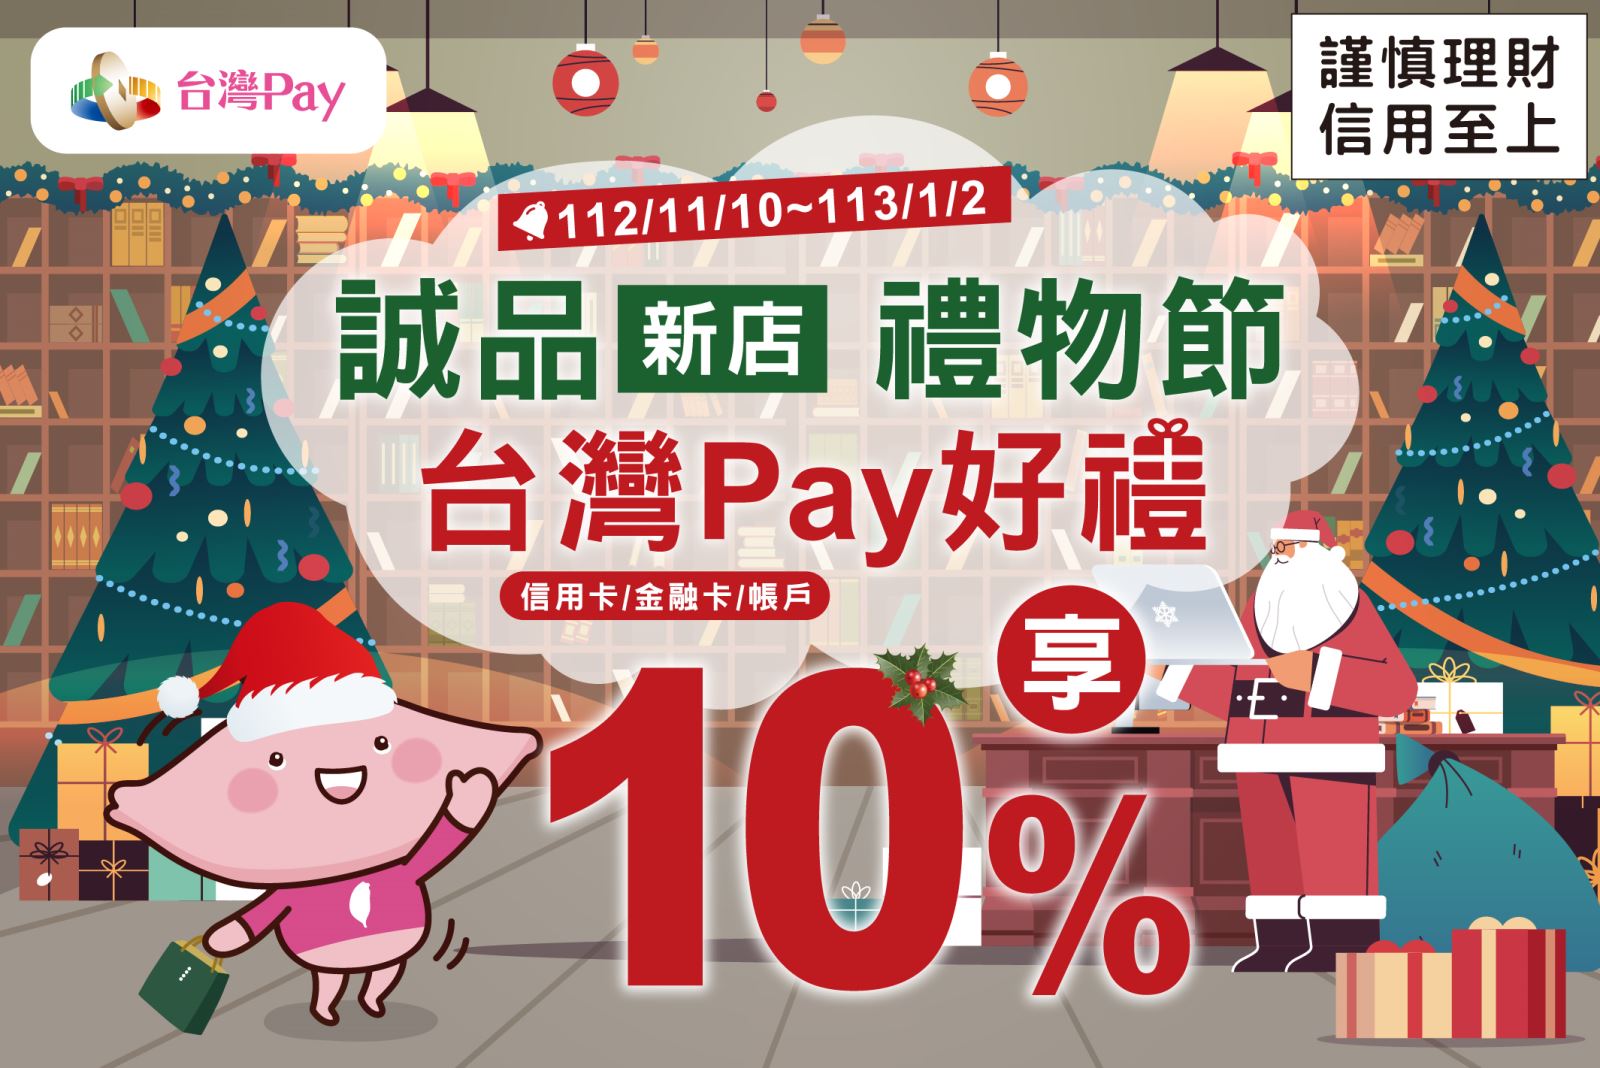 活動結束)誠品新店禮物節台灣Pay 好禮享10%